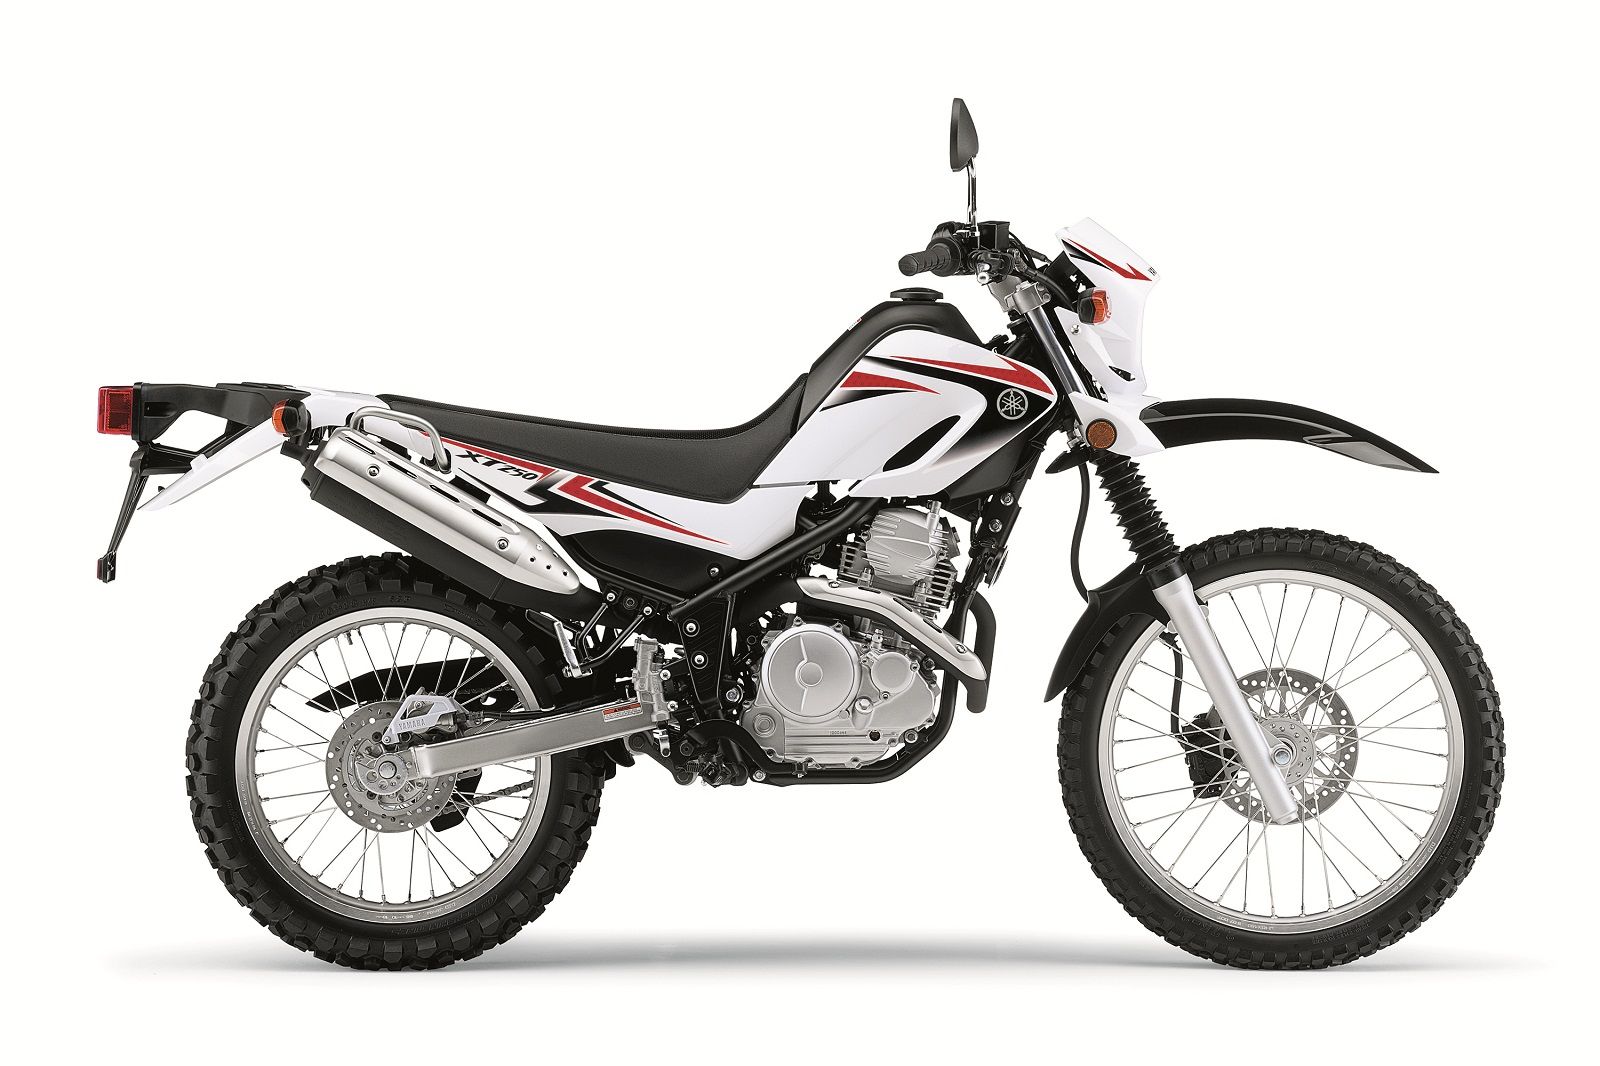 2011 Yamaha XT250